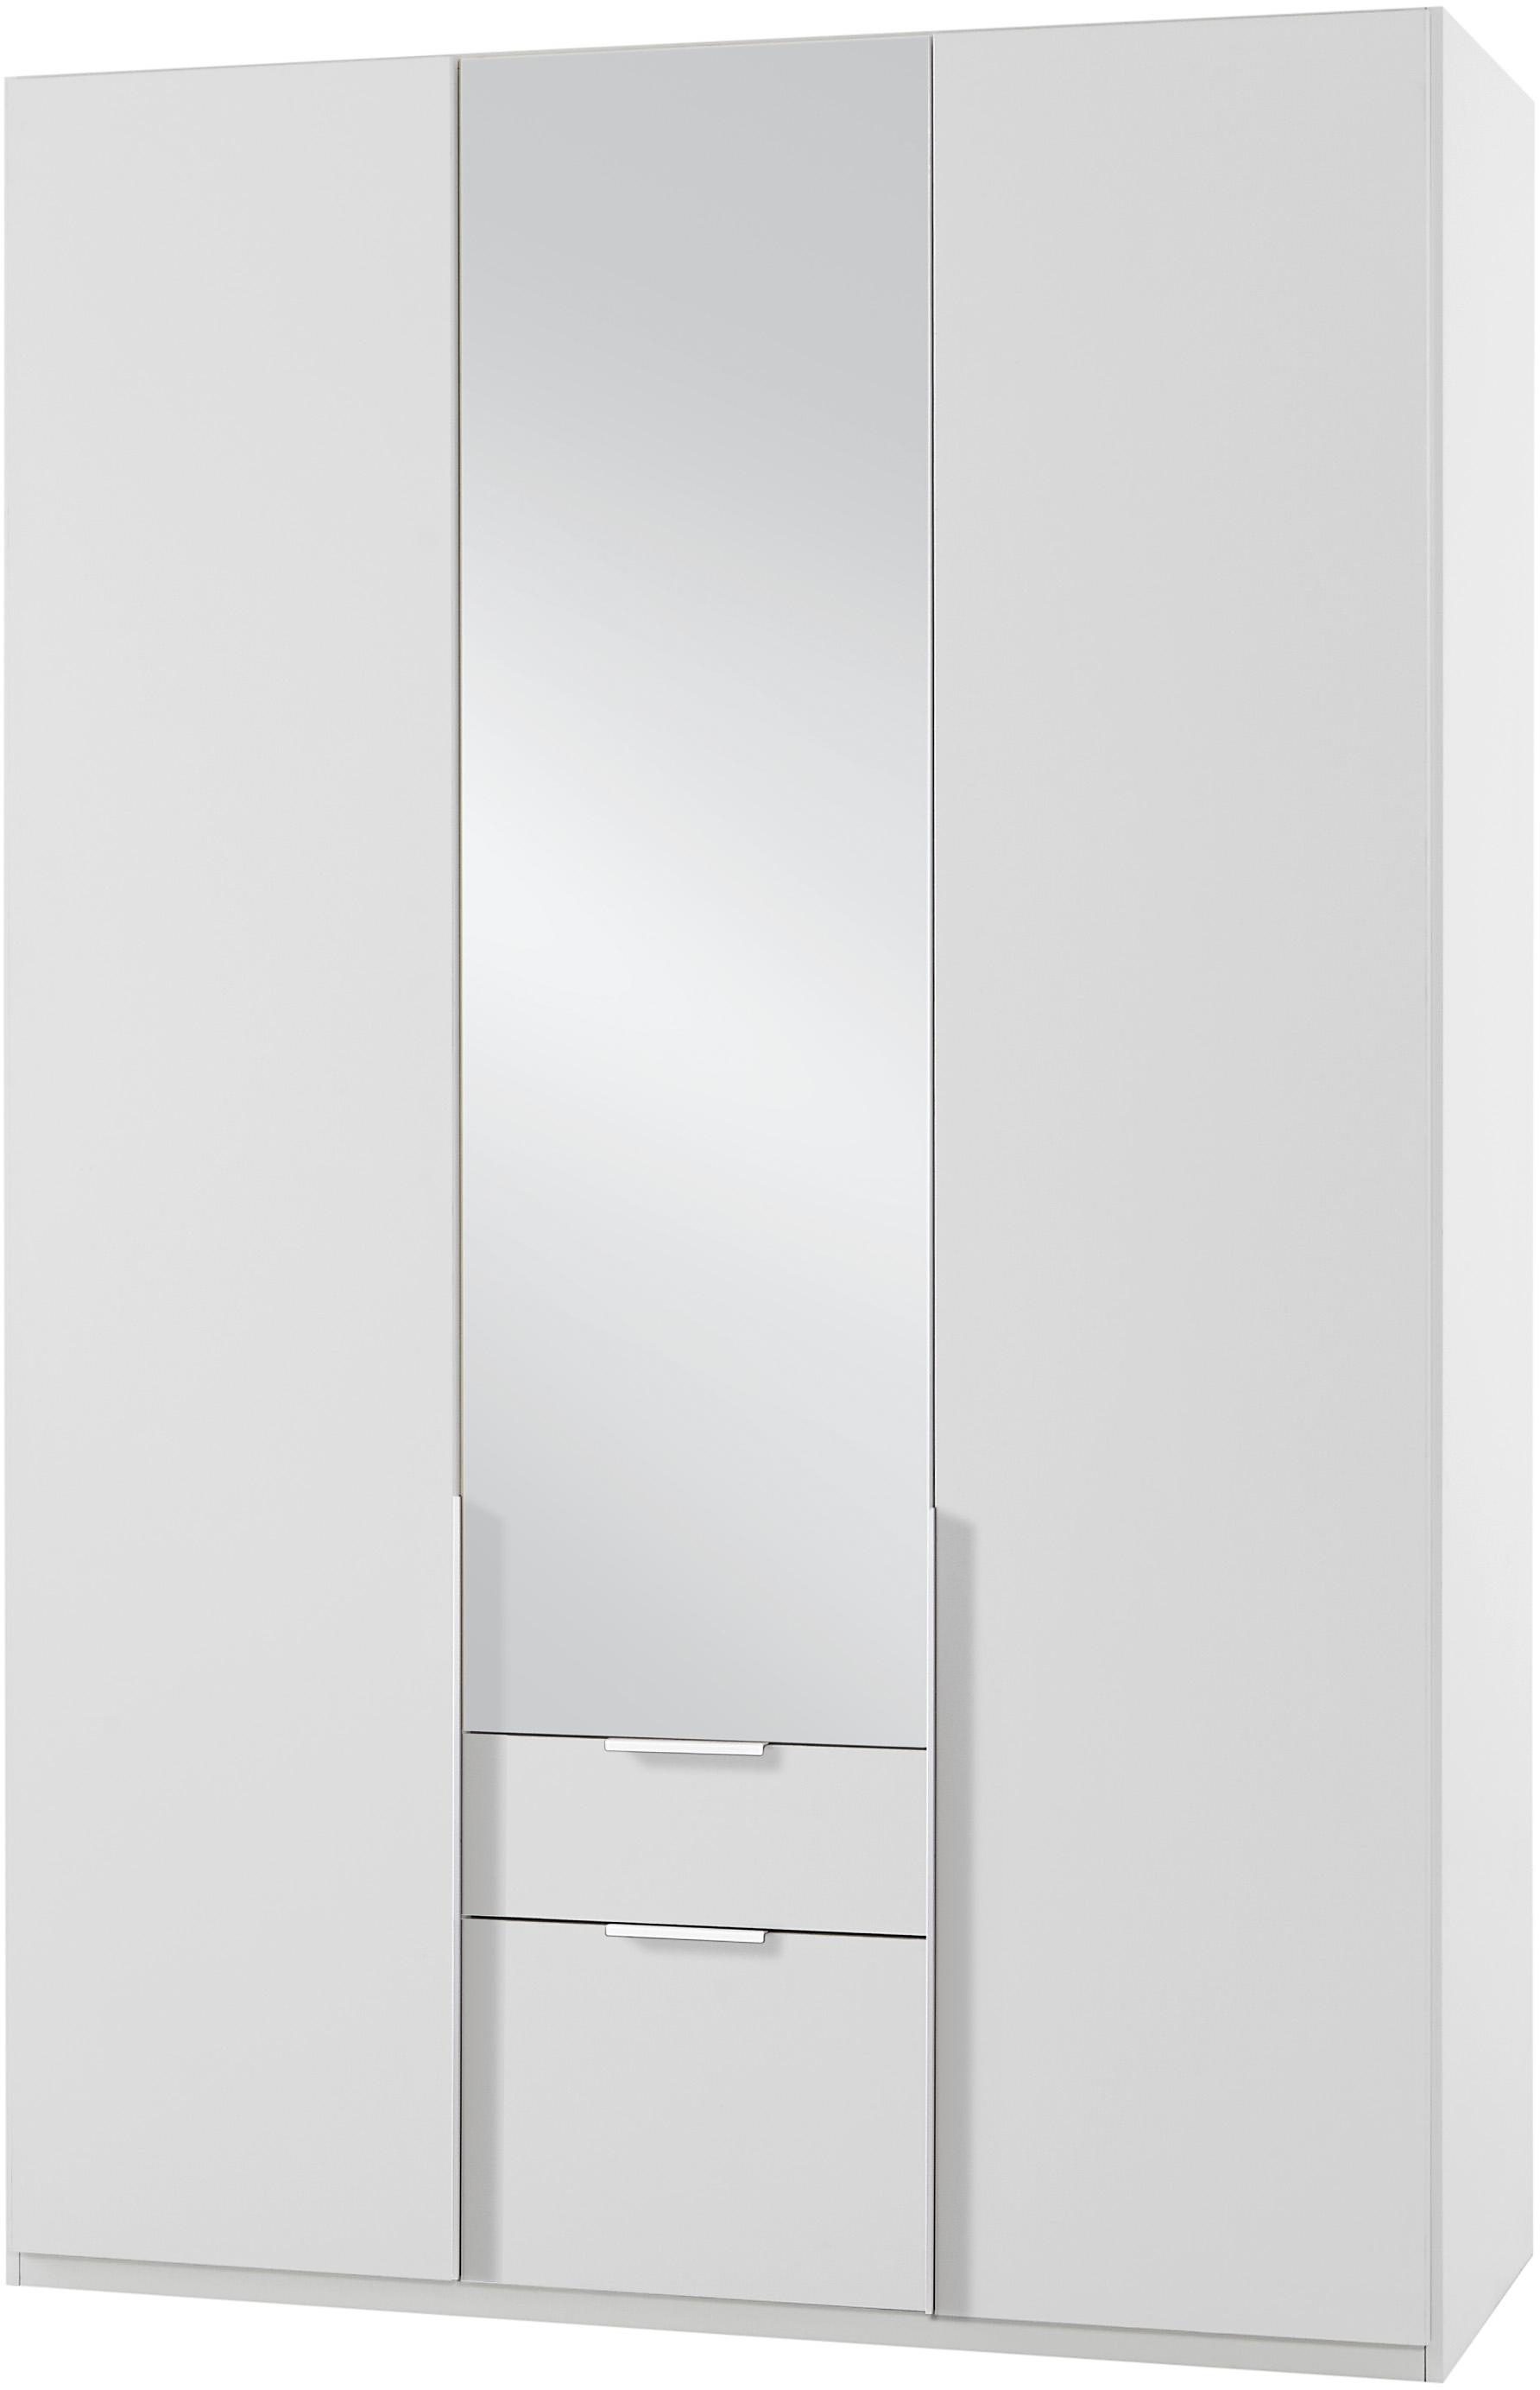 Kledingkasten Wimex garderobekast met spiegeldeuren en laden New York 283635